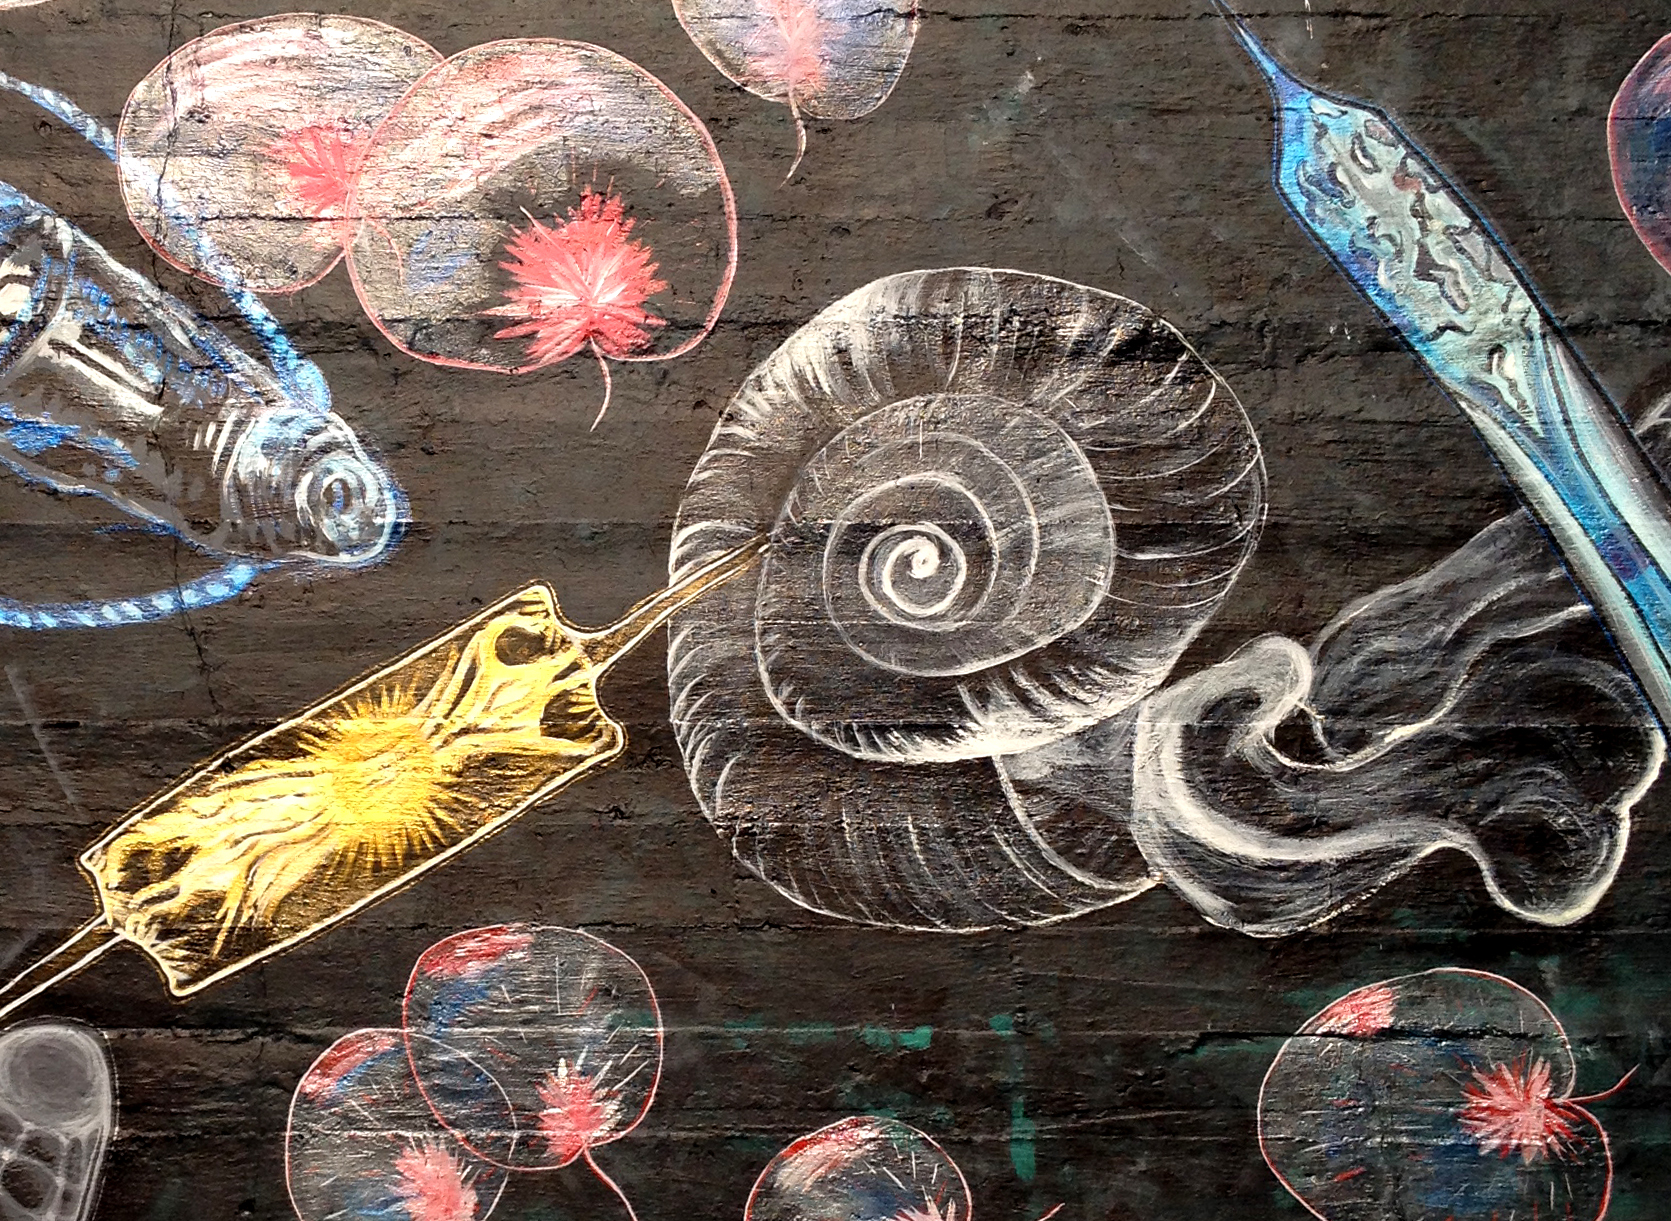 Plankton Mural Detail 1.jpg